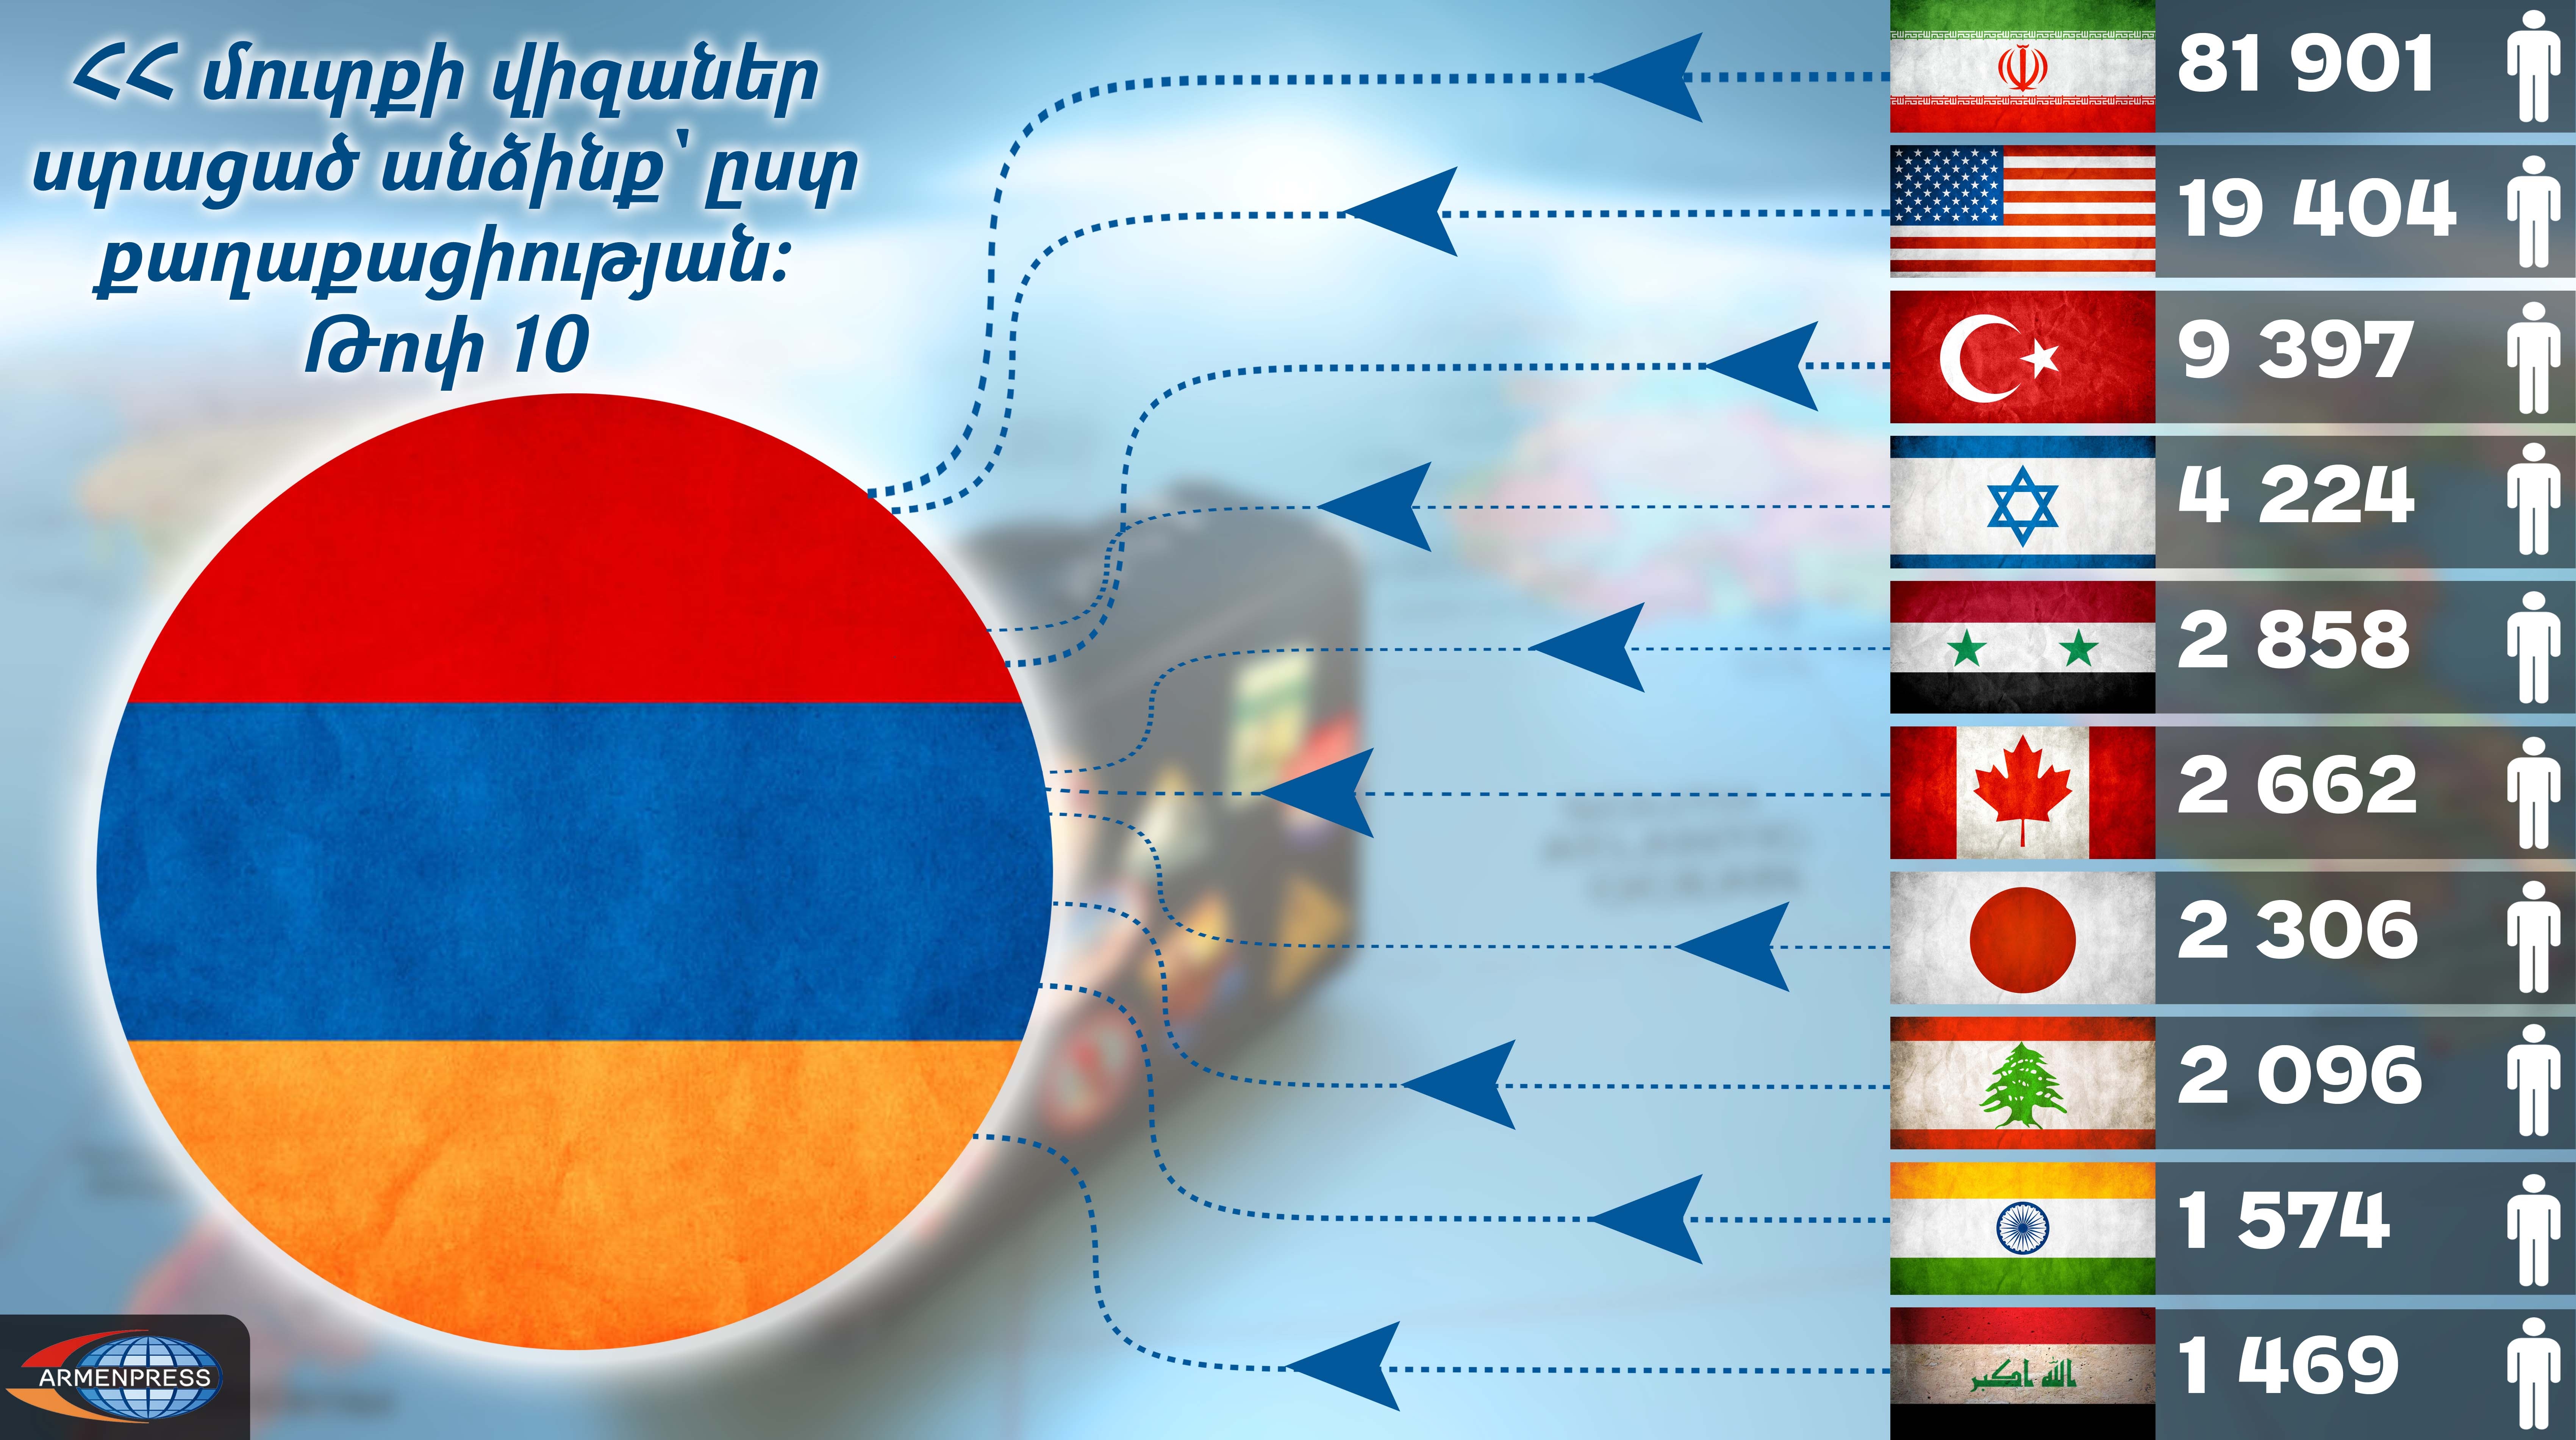 Лица, получившие въездные визы в Армению по странам гражданства: инфографика